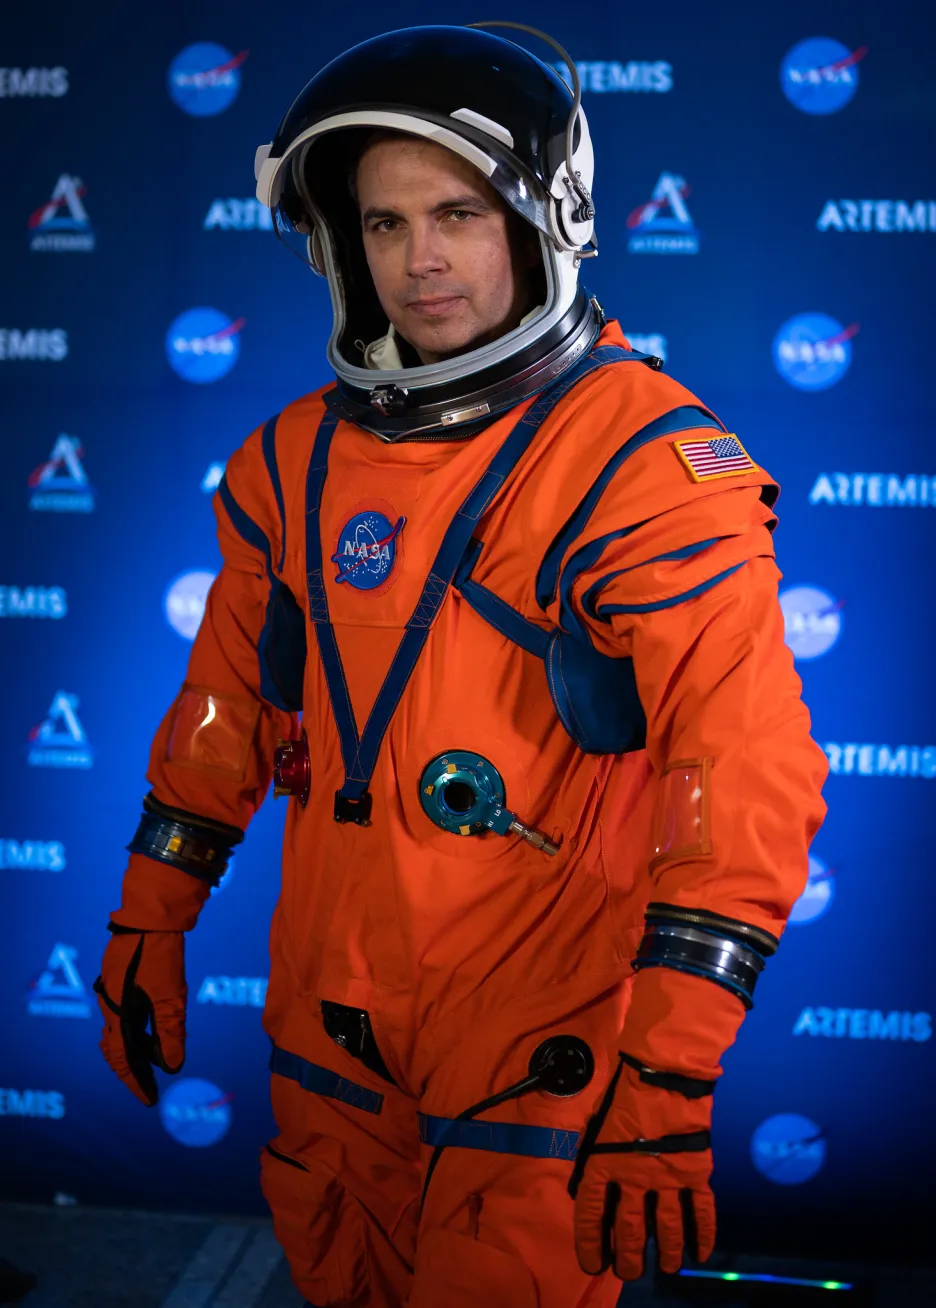 NASA představila nové skafandry